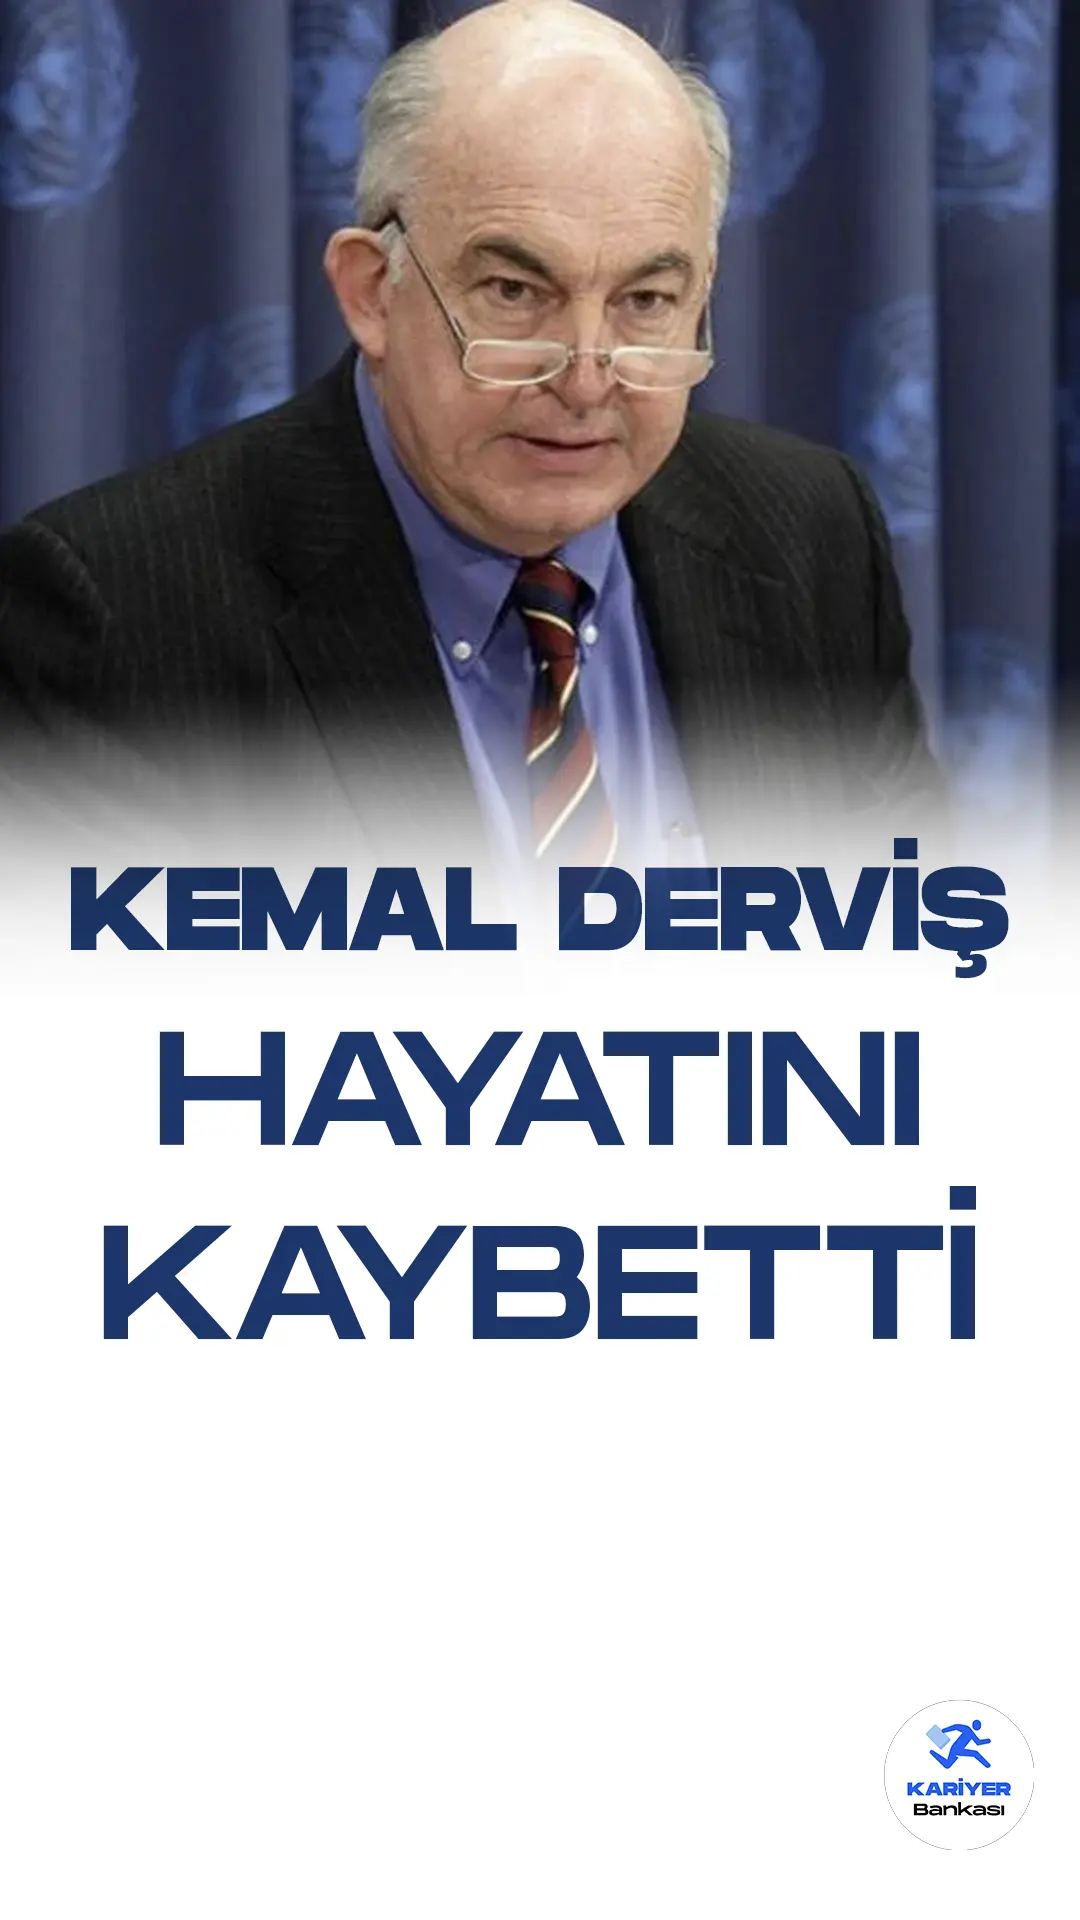 Kemal Derviş Hayatını Kaybetti.Ekonomiden sorumlu eski Devlet Bakanı Kemal Derviş, 74 yaşında hayata gözlerini yumdu.